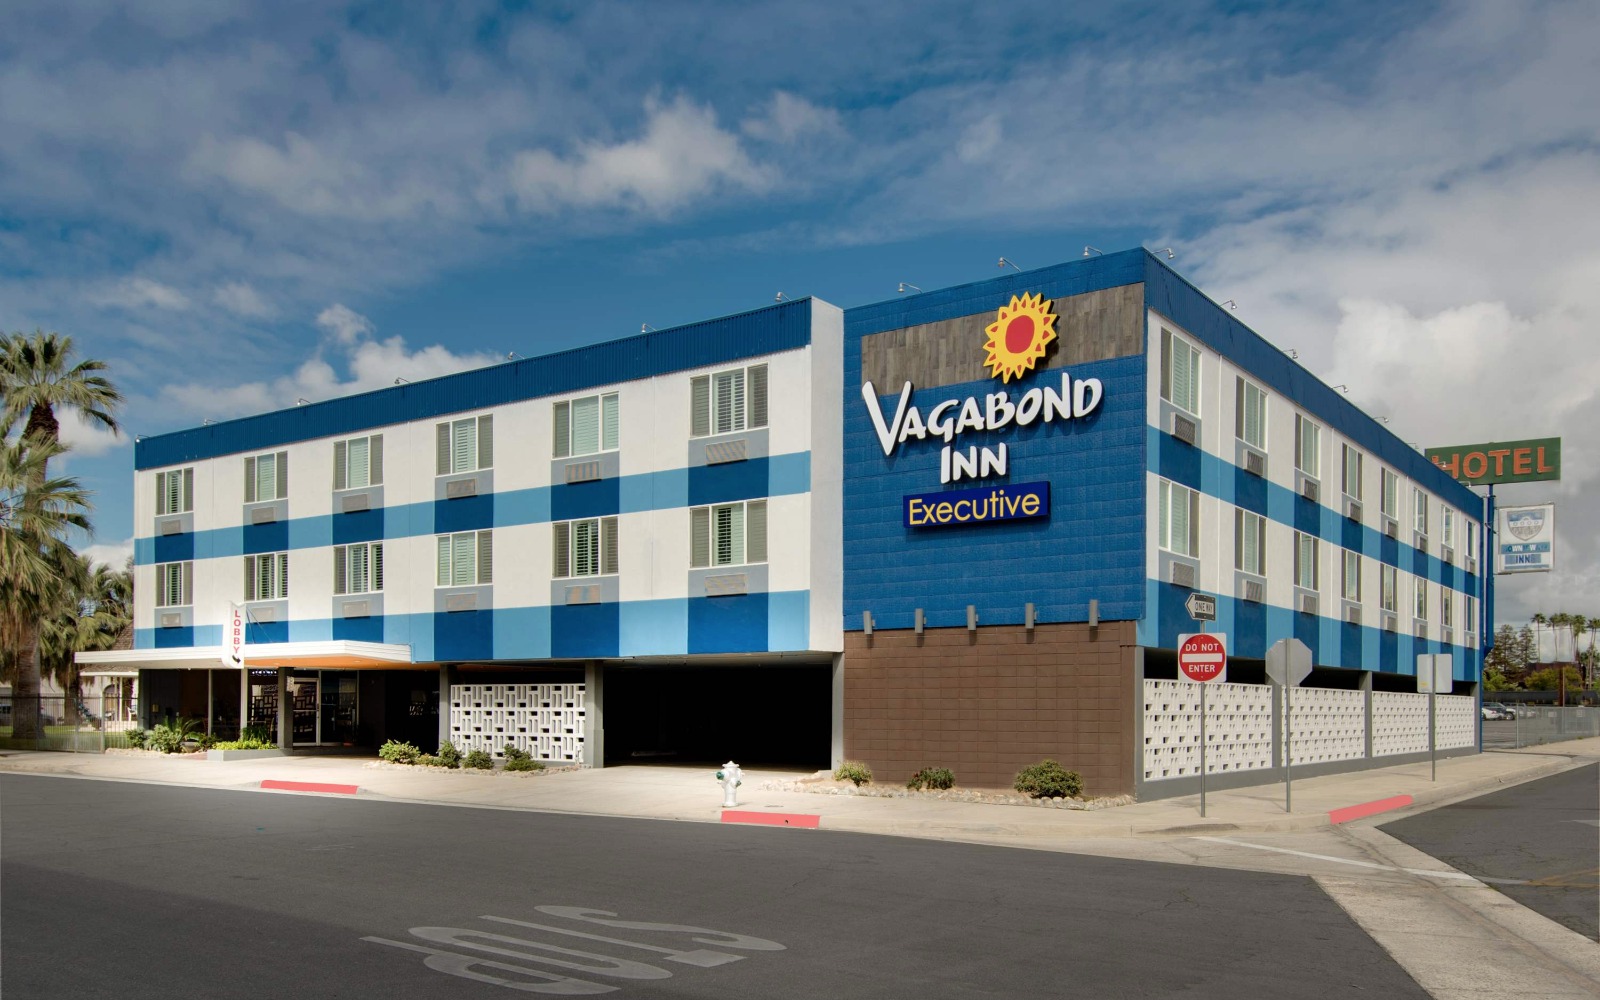 Executive Vagabond Inn Hotels, California